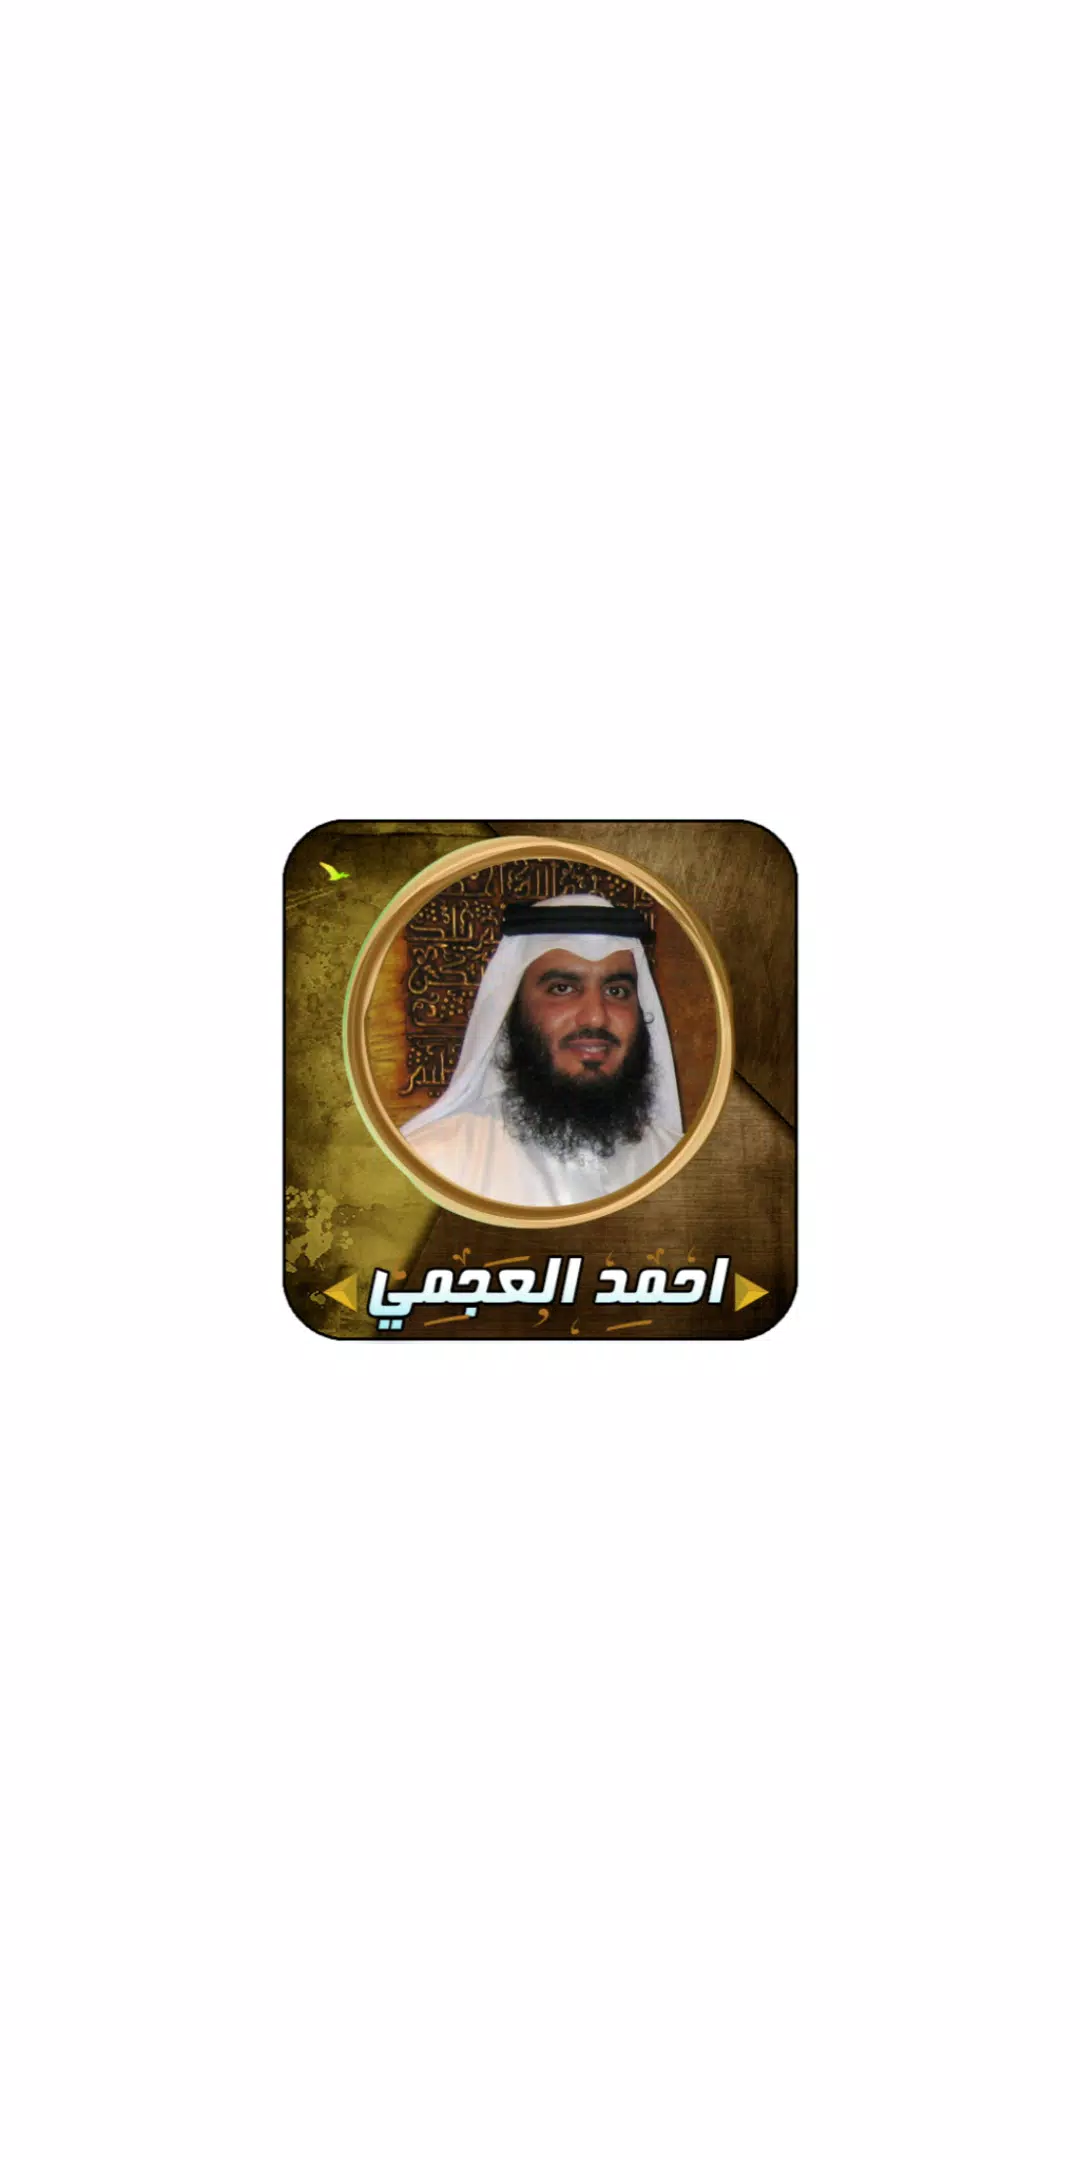 القران الكريم بصوت الشيخ احمد العجمي mp3 APK pour Android Télécharger